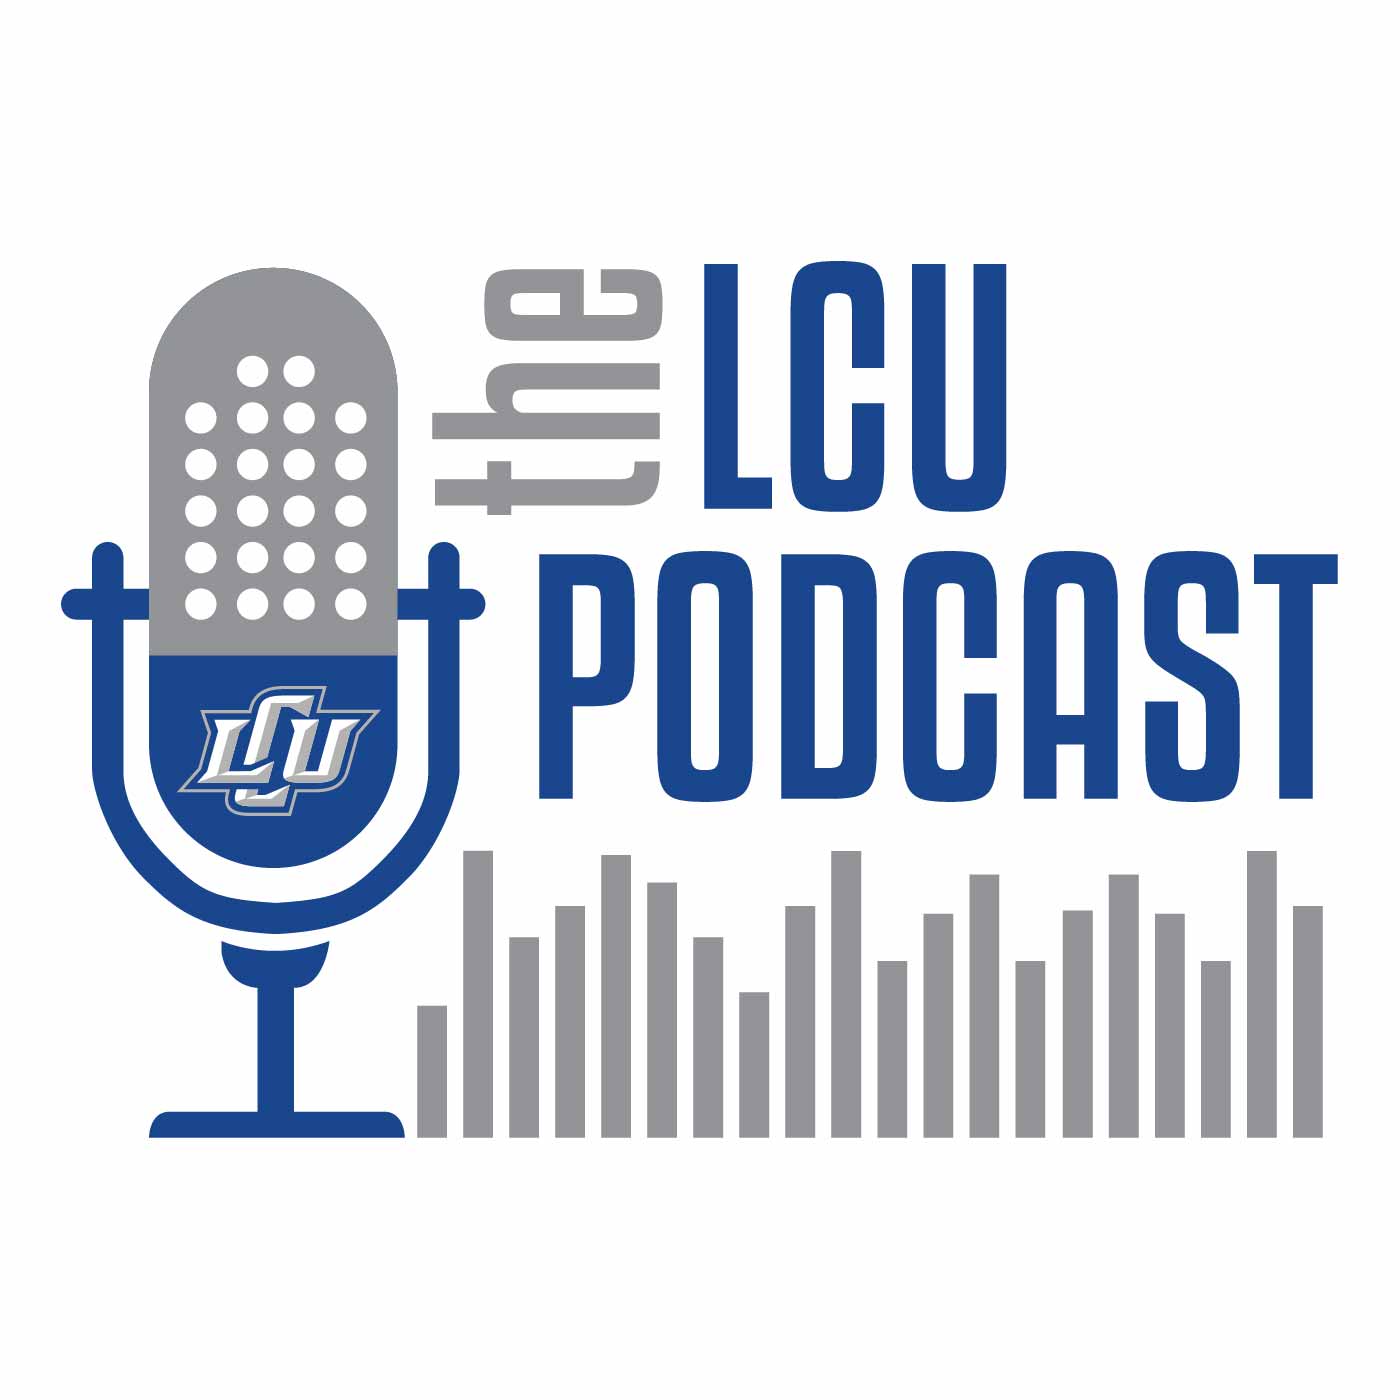 The LCU Podcast Logo